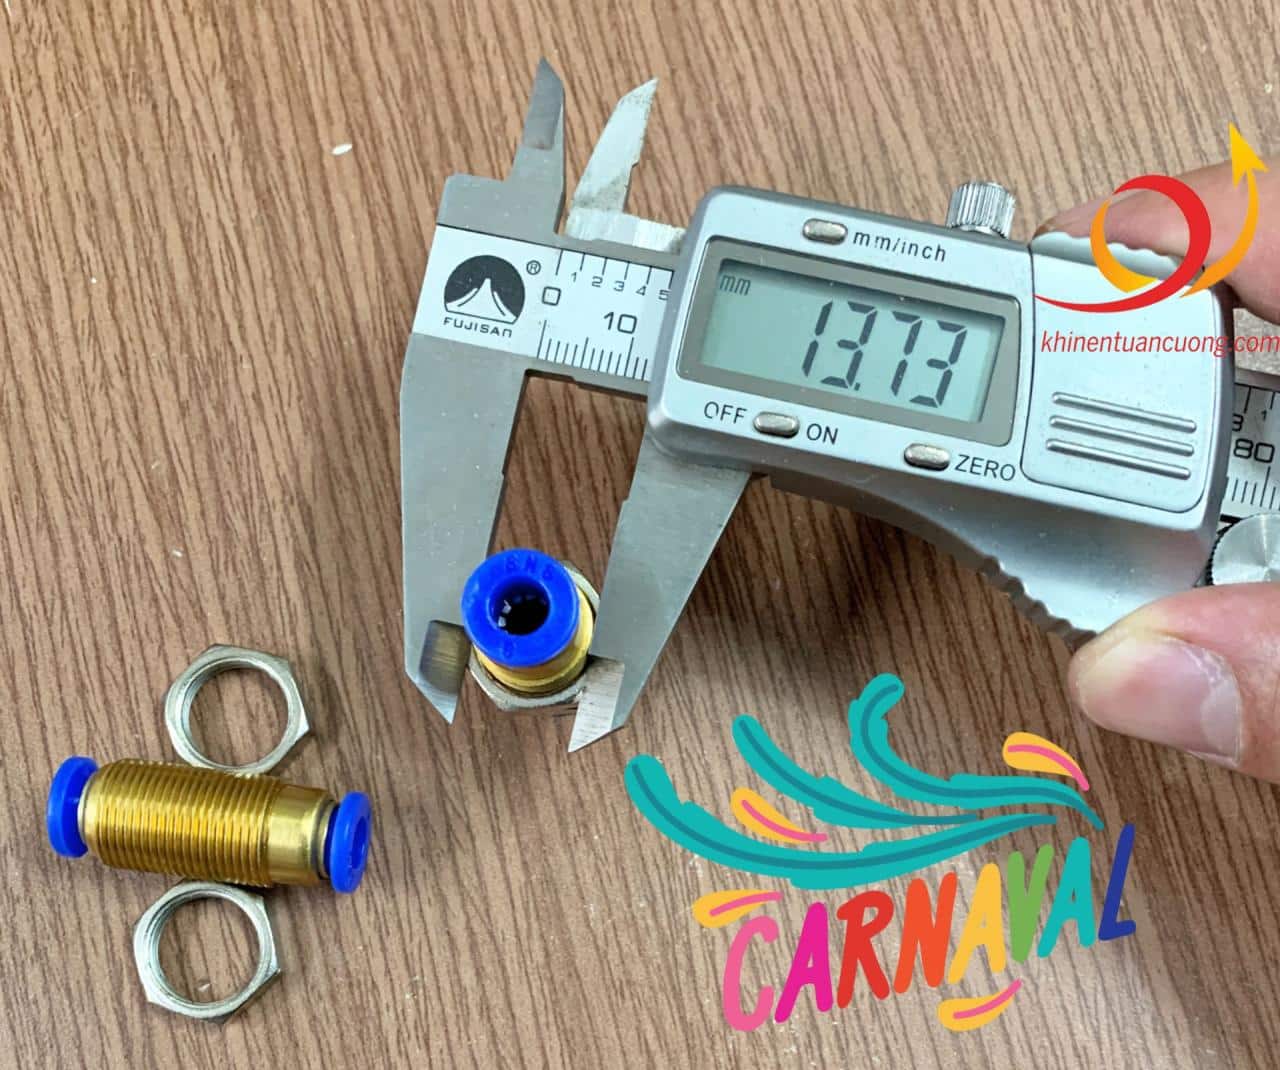 Đường kính ren của măng xông SPM 6 là khoảng 14mm nên bạn cần đo hoặc tra kích thước này trước khi "tạo" hay khoan lỗ mặt bích.